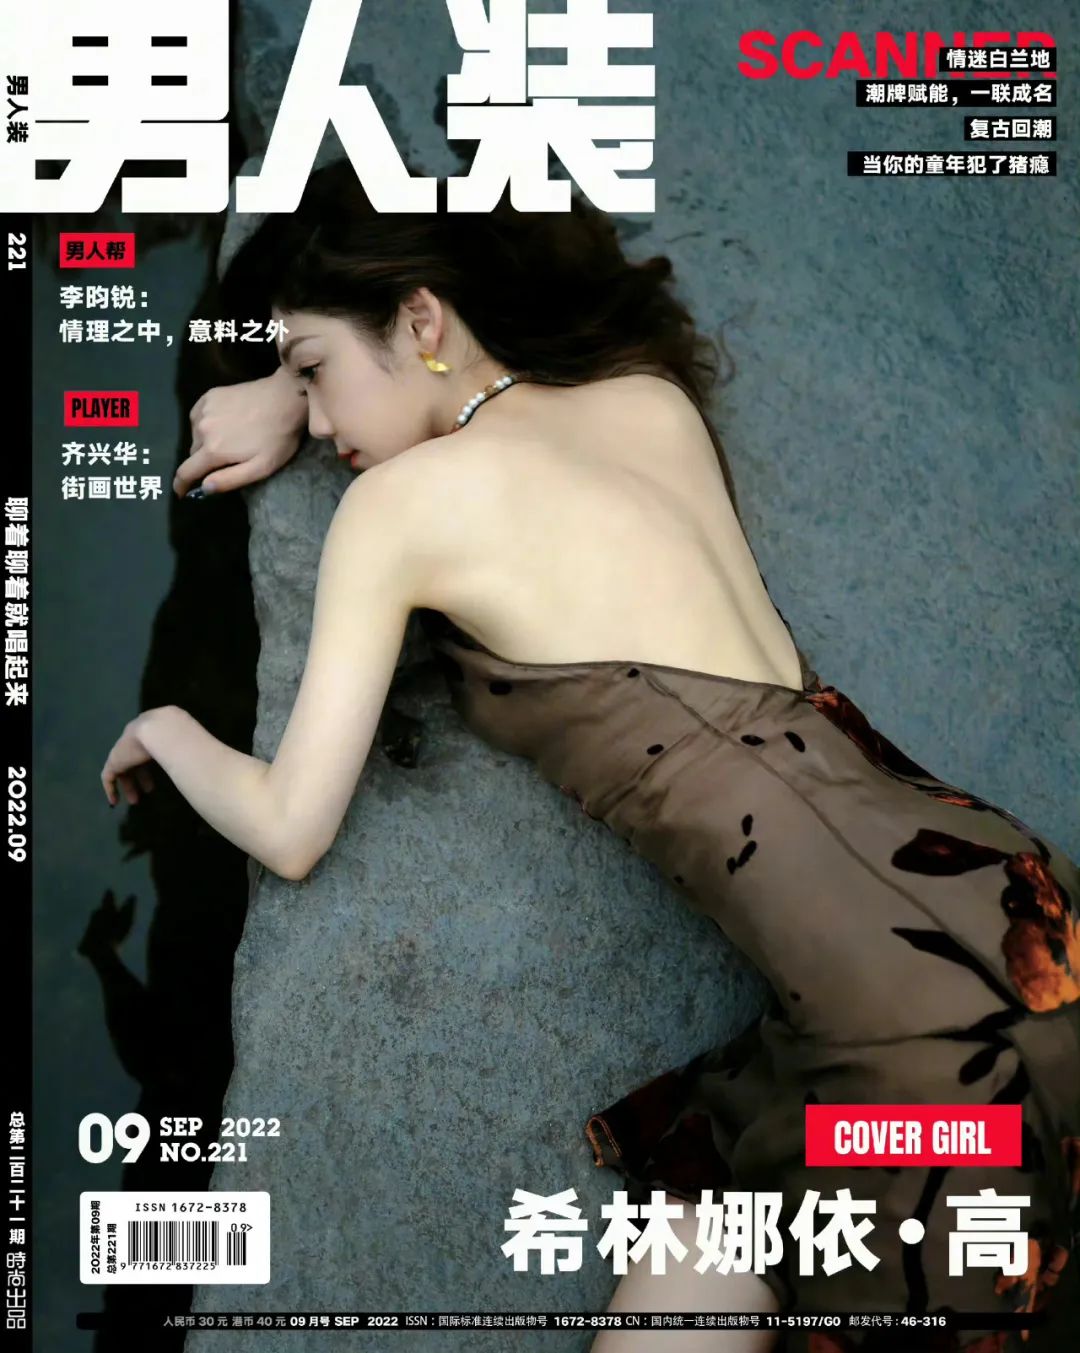 《男人装》2022年九月刊封面人物希林娜依高